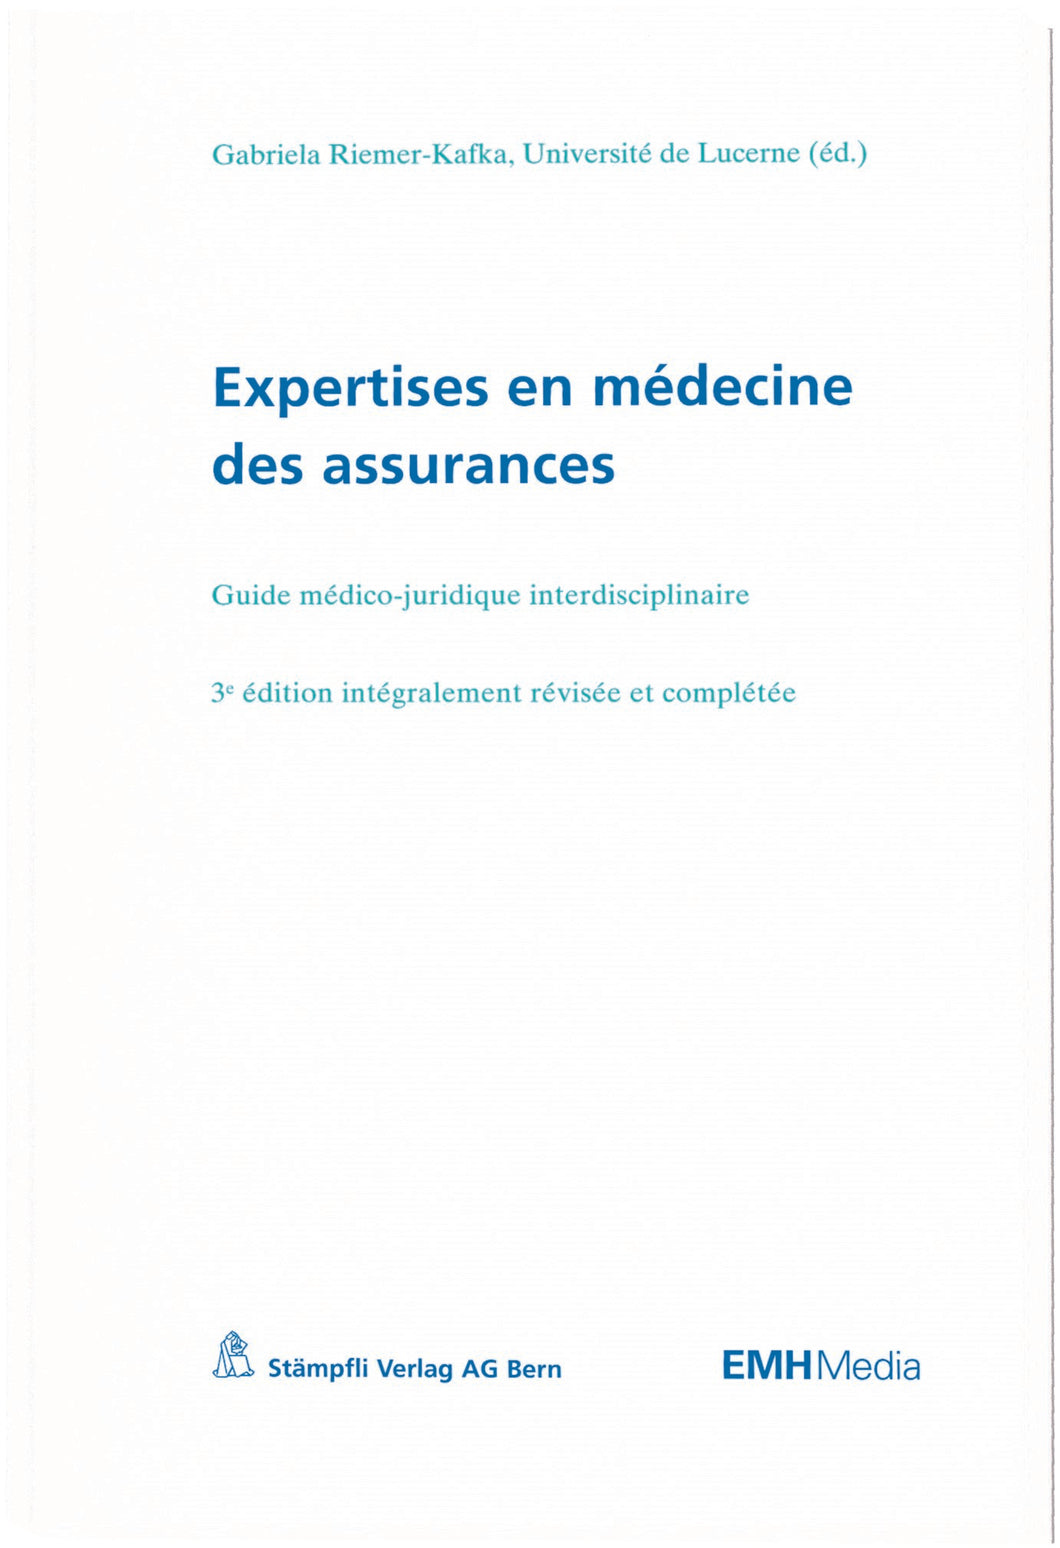 Expertises en médecine des assurances, 3e édition révisée et complétée.